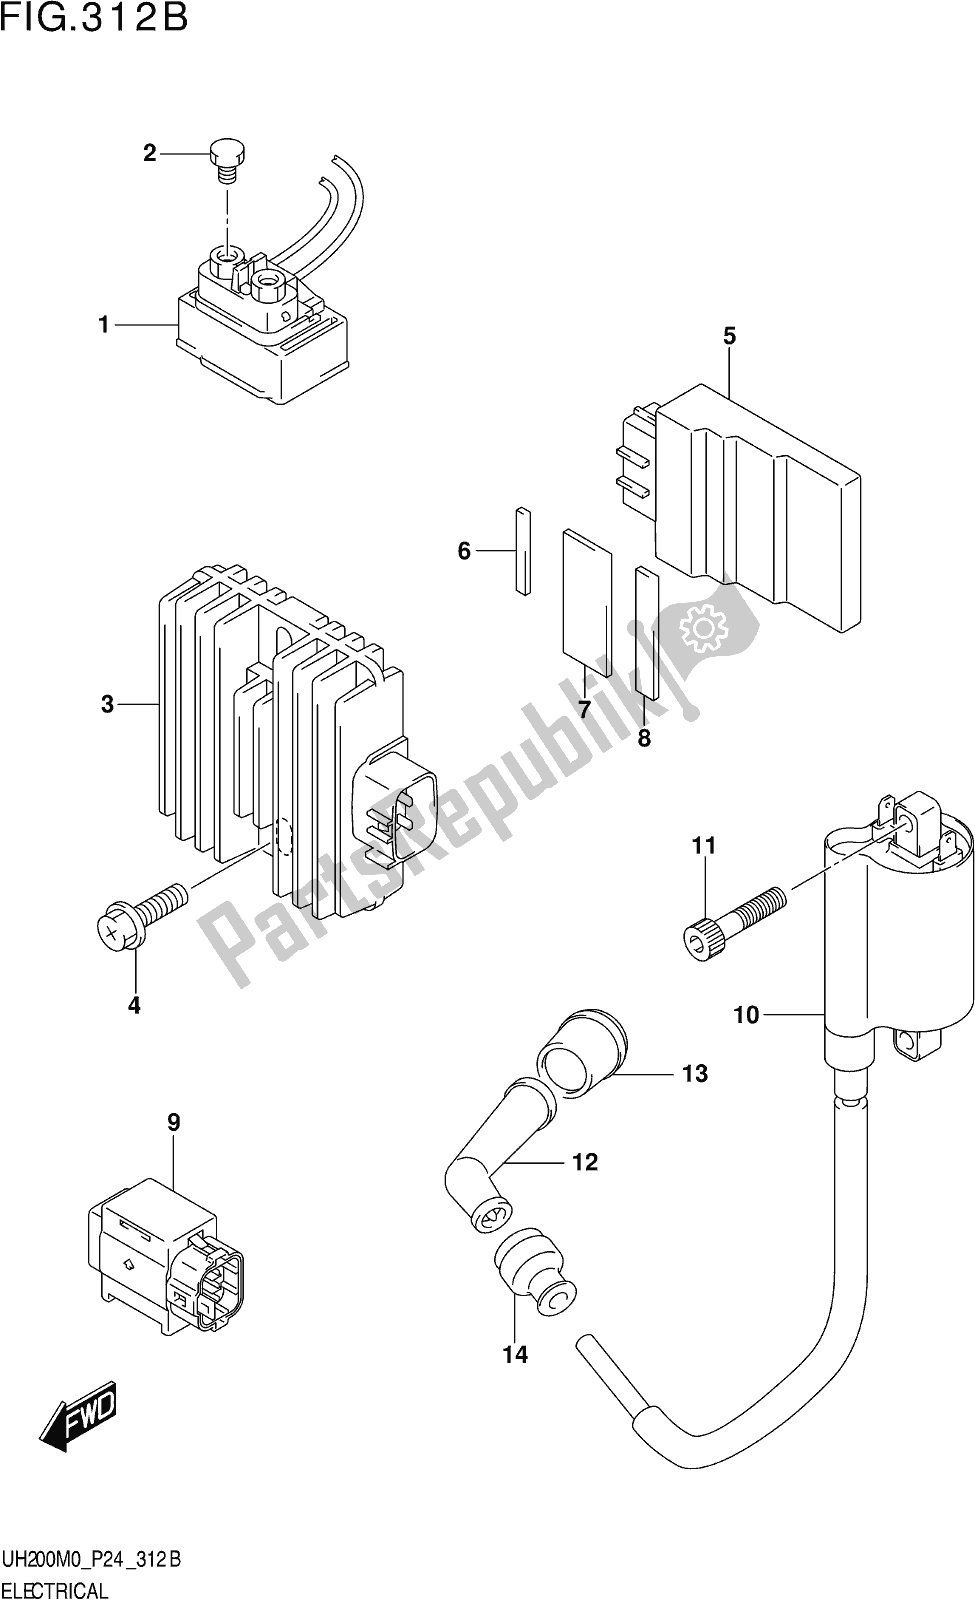 Alle onderdelen voor de Fig. 312b Electrical van de Suzuki UH 200 2020